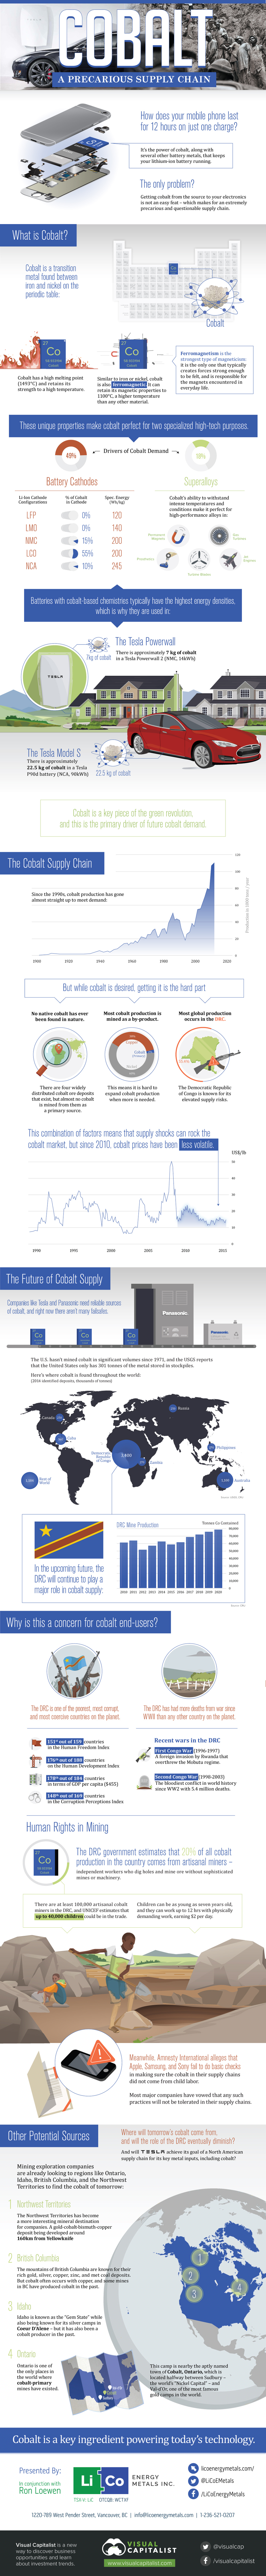 Cobalt: A Precarious Supply Chain